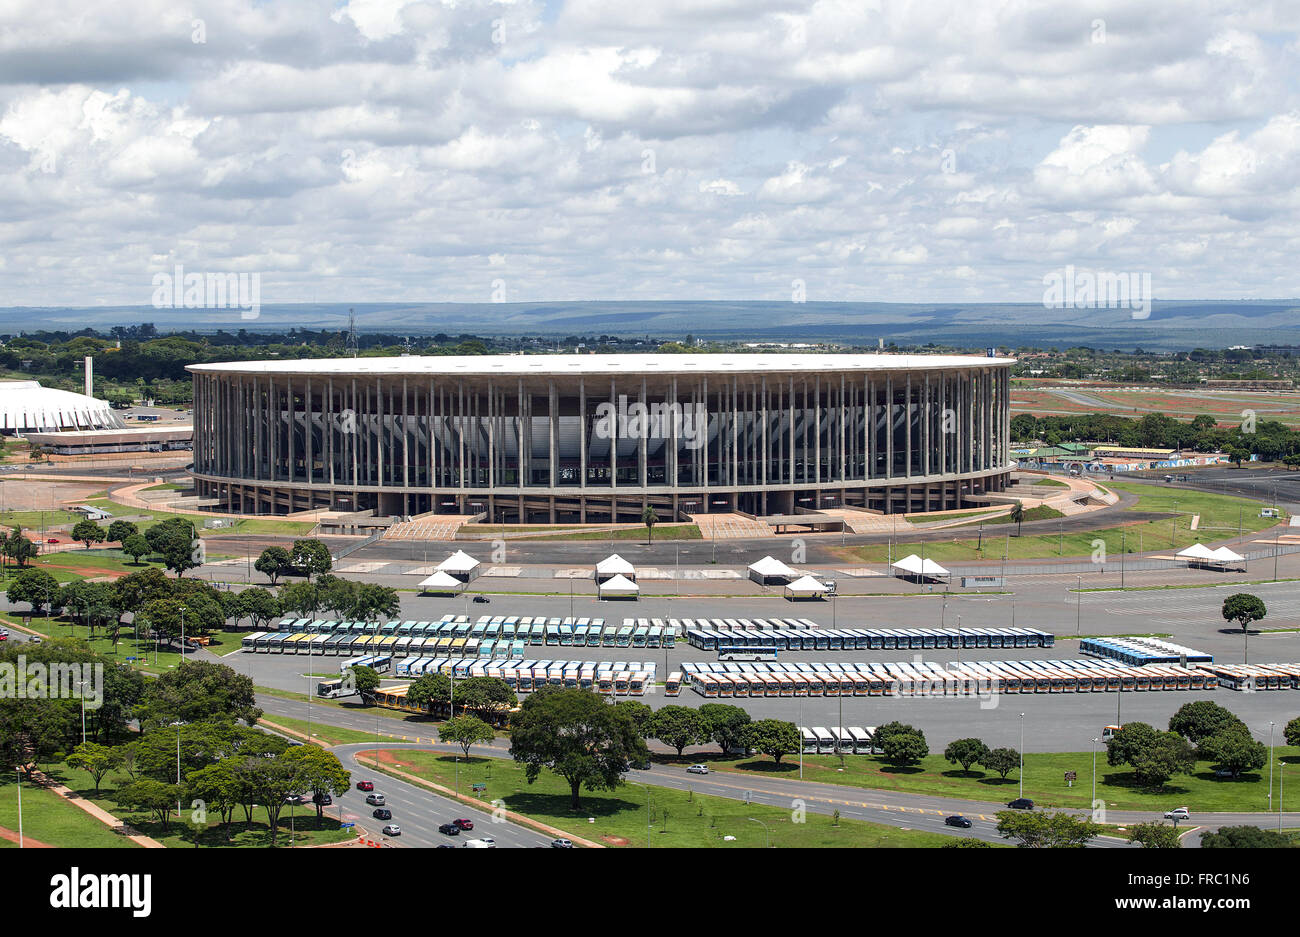 Mane Garrincha Stadium also known as Estadio Nacional de Brasilia Stock Photo